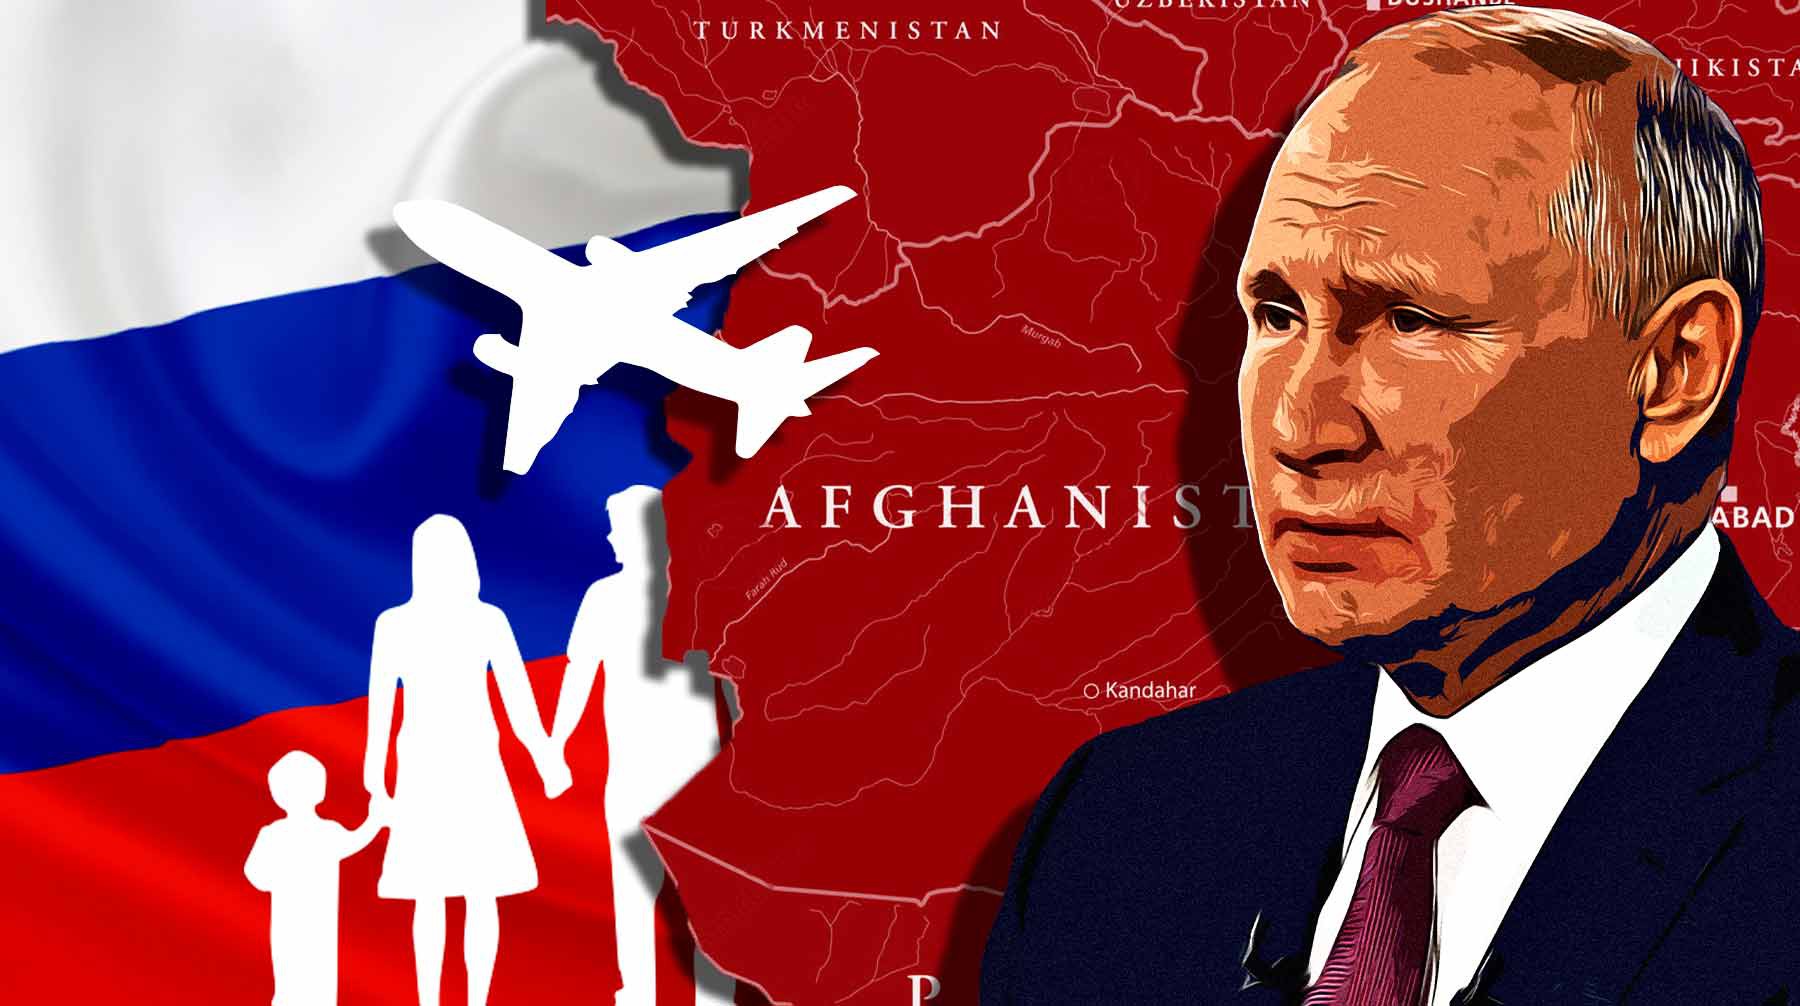 Dailystorm - «Только Путин поможет»: «русский афганец» Оленин рассказал, что его жена и дети не могут покинуть Афганистан